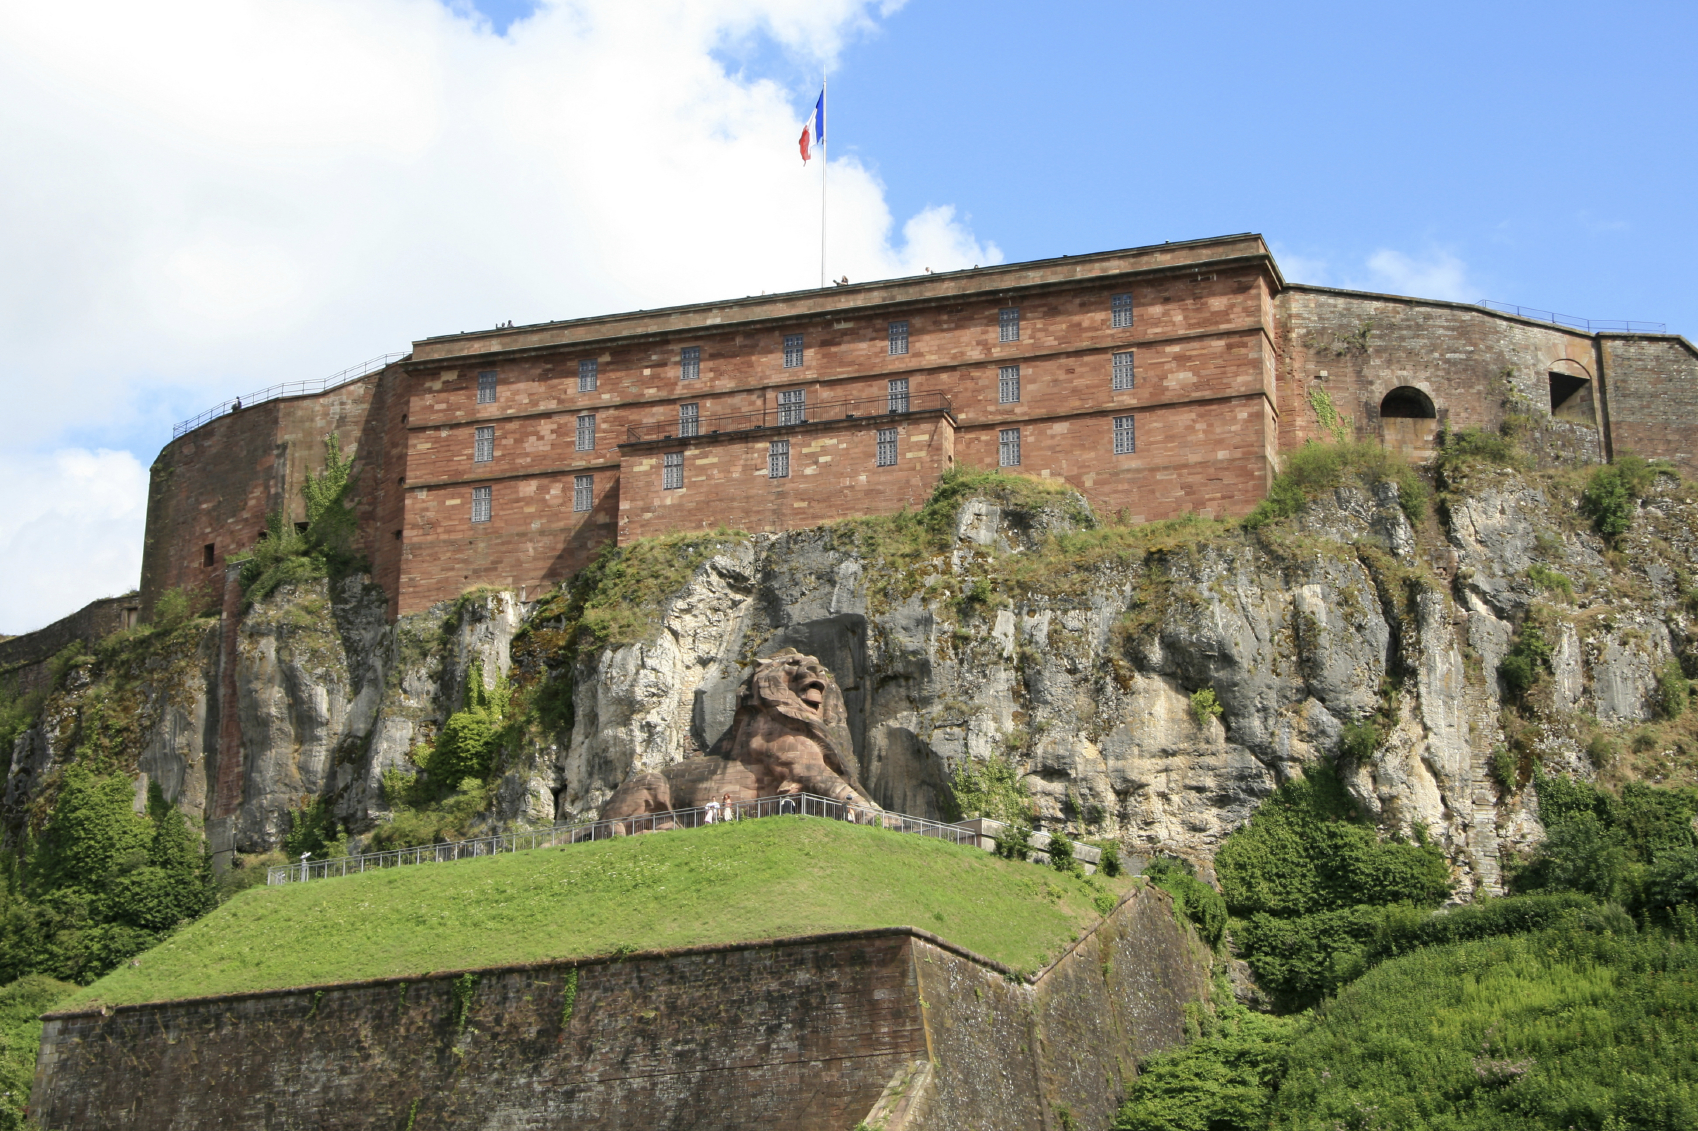 Löwenstatue in Belfort